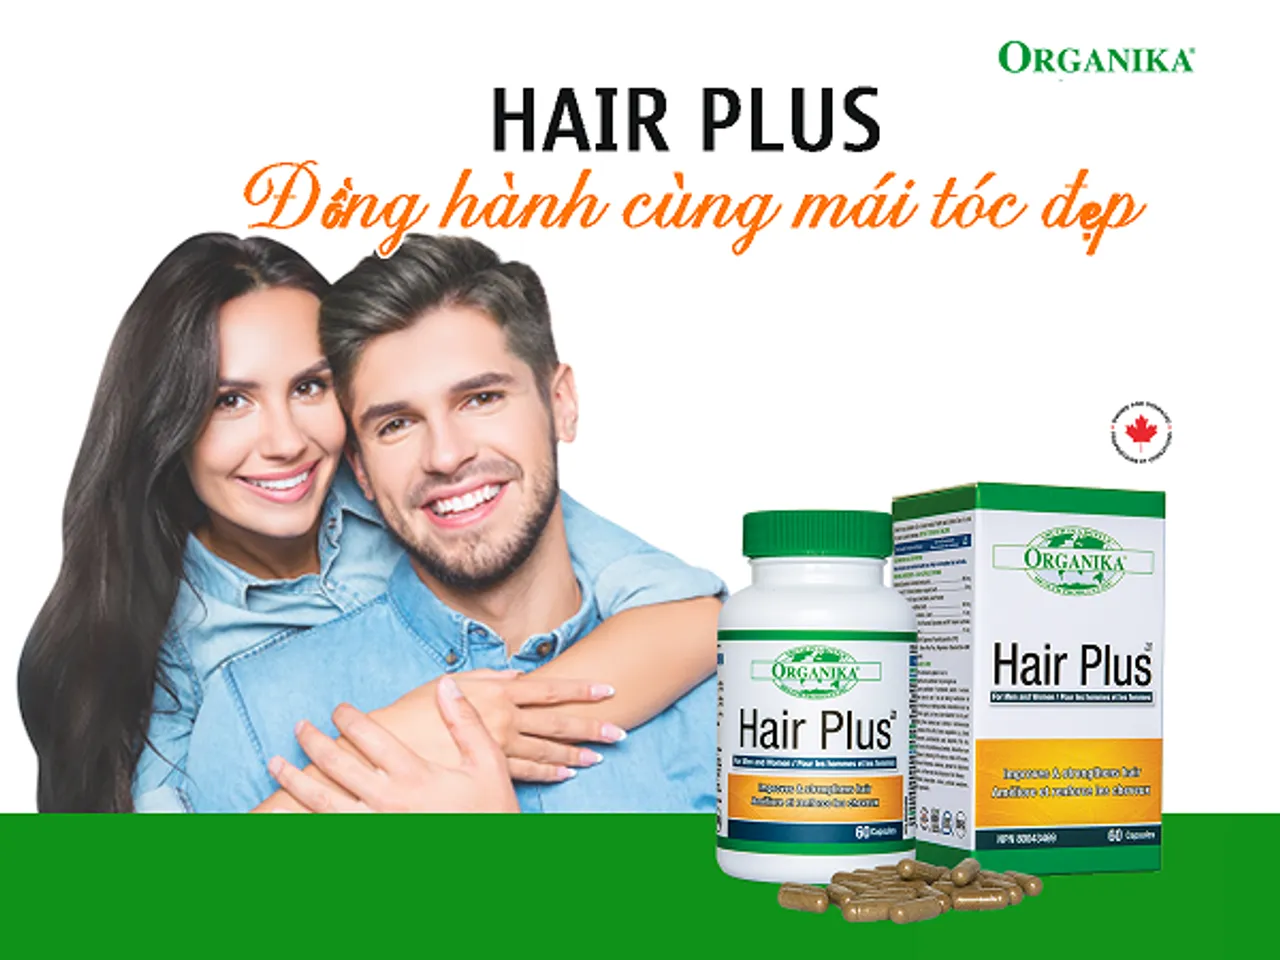 Viên uống Hair Plus Organika dành cho cả nam và nữ